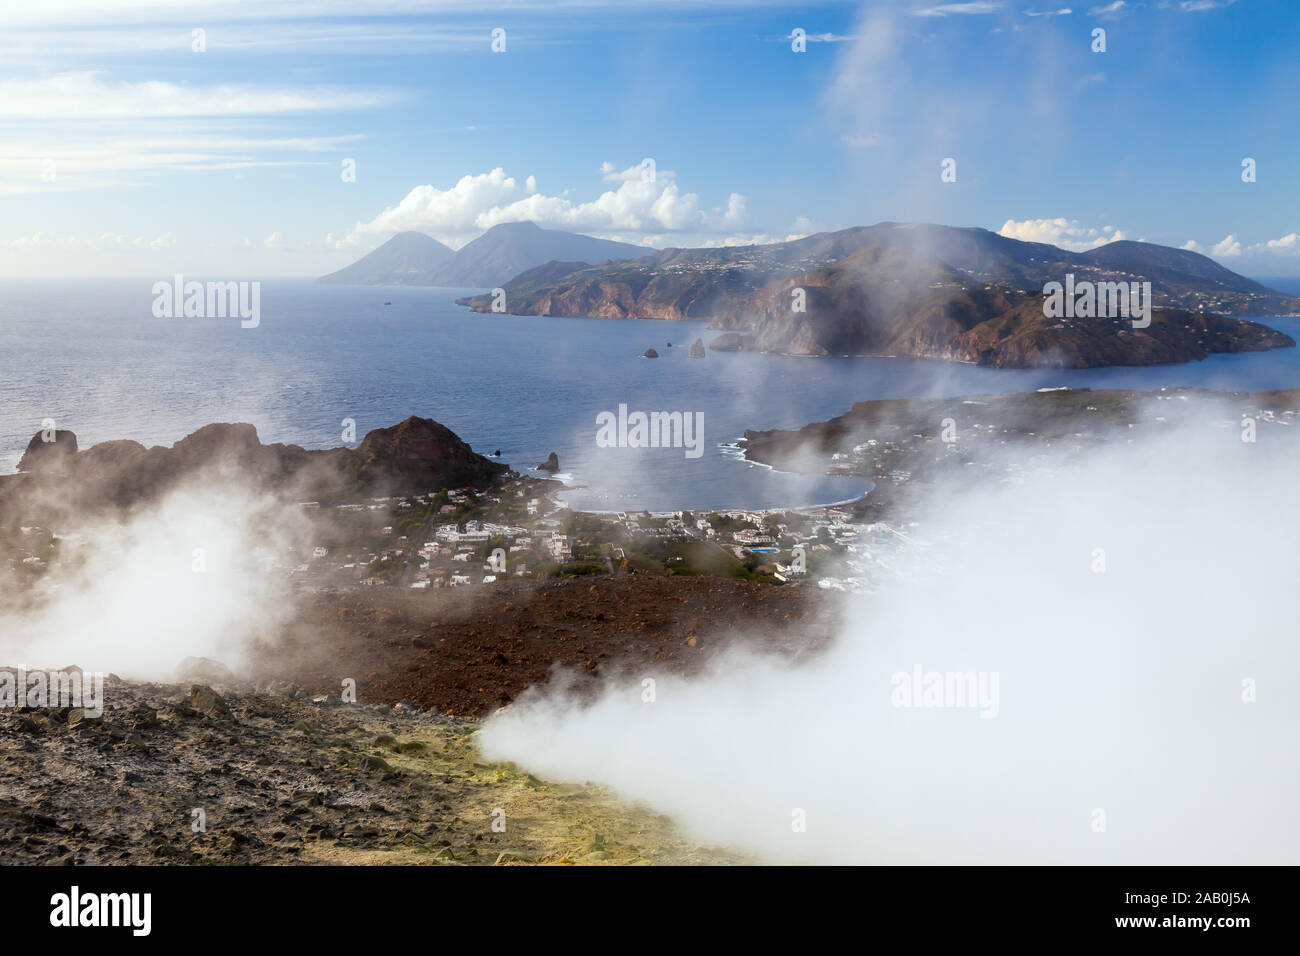 Ein aktiver Vulkan auf den Laparischen Inseln in Italien Stock Photo